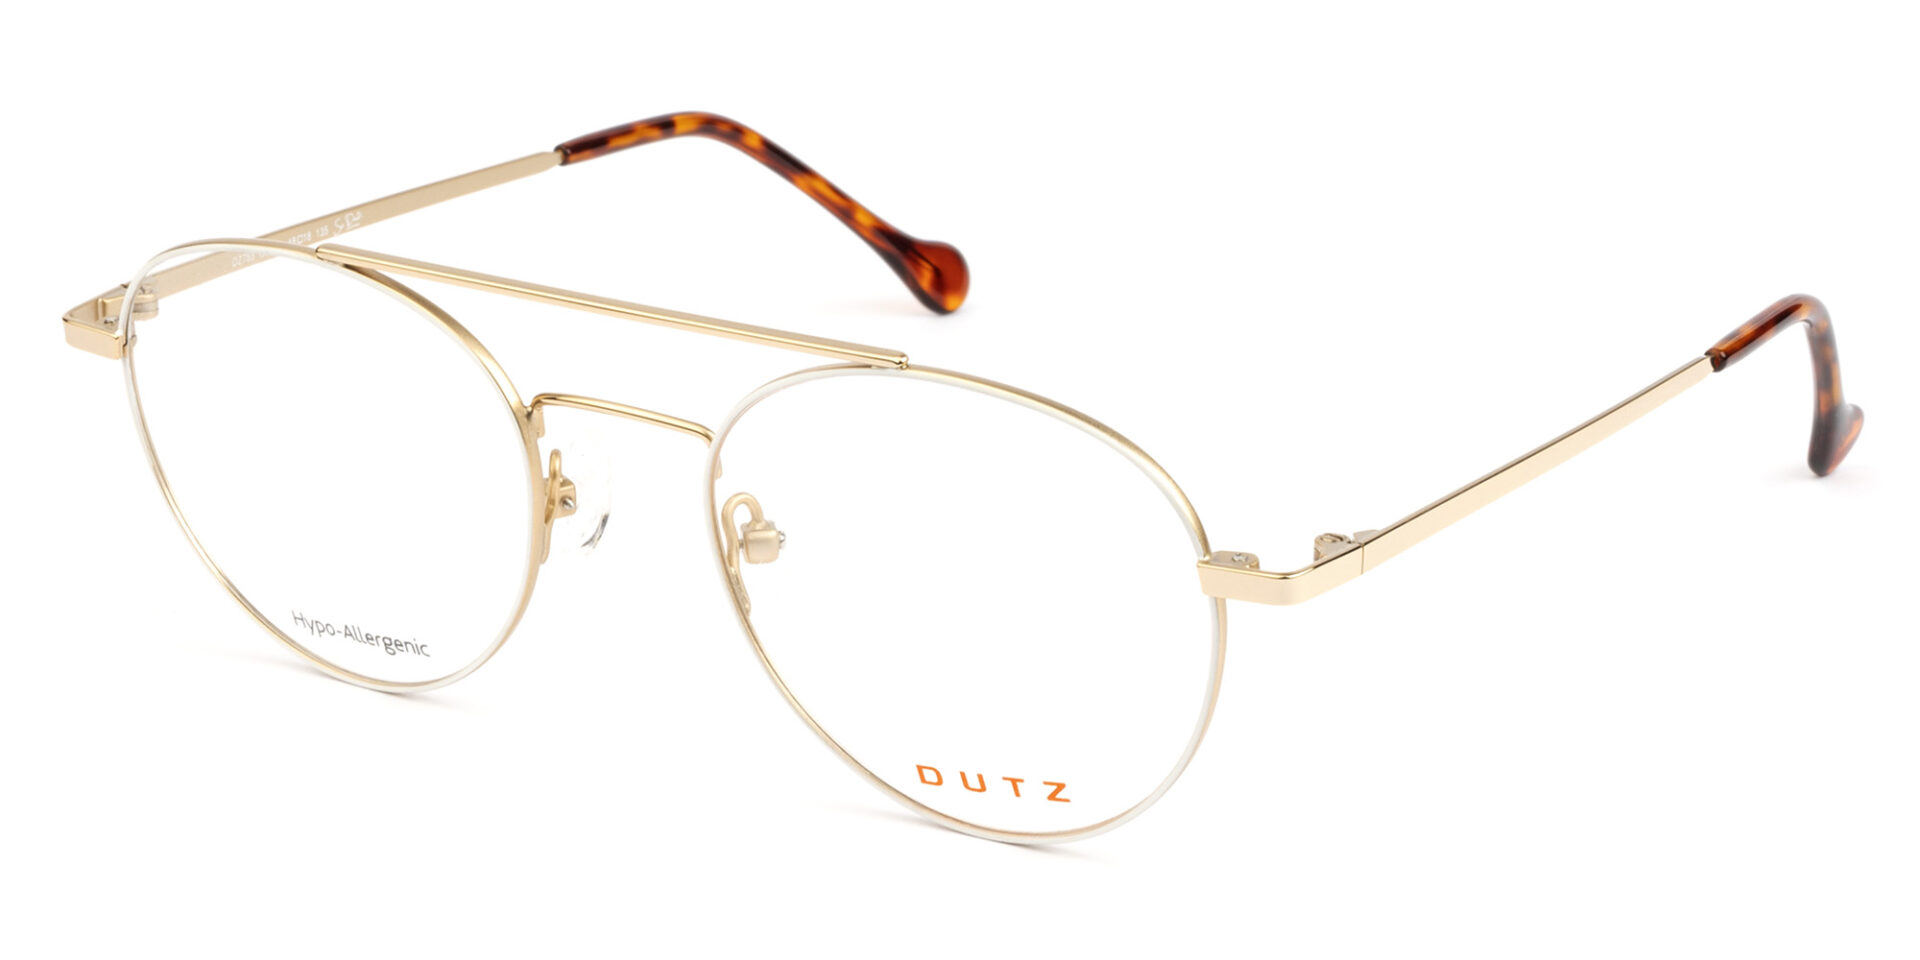 schending Overtuiging Maakte zich klaar Dutz Eyewear Brillen - Koop je natuurlijk bij B-optics!